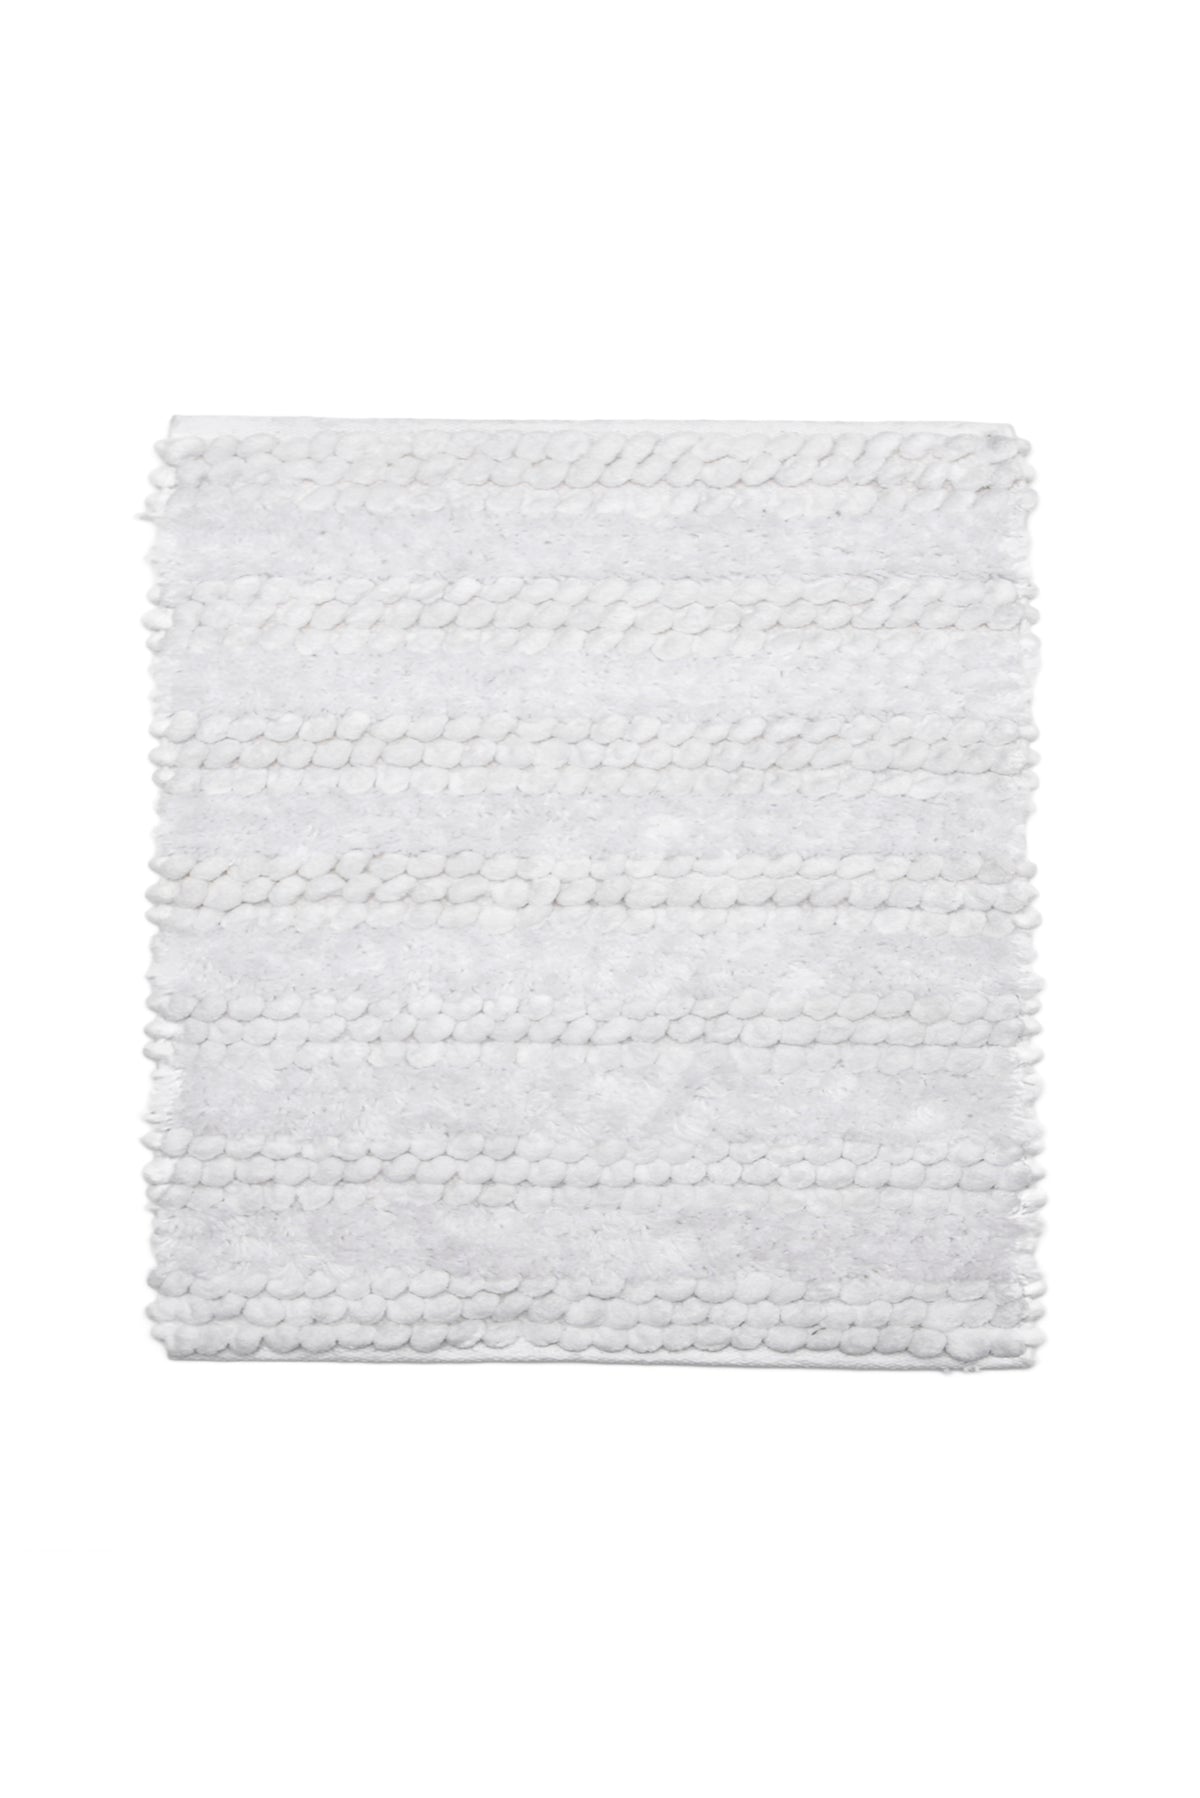 Badmat Roberto White - 60% Katoen 40% Polyester